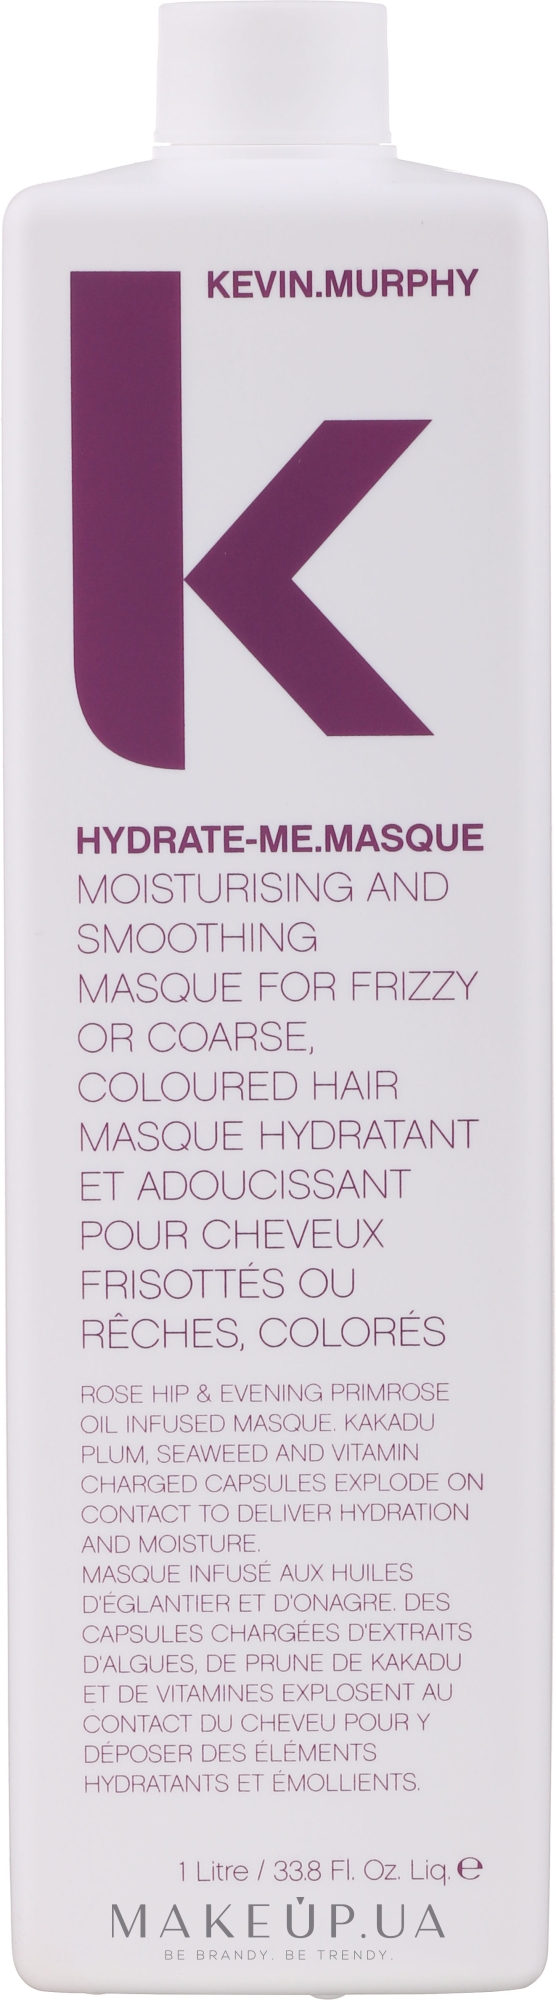 Маска для интенсивного увлажнения волос - Kevin.Murphy Hydrate-Me.Masque — фото 1000ml